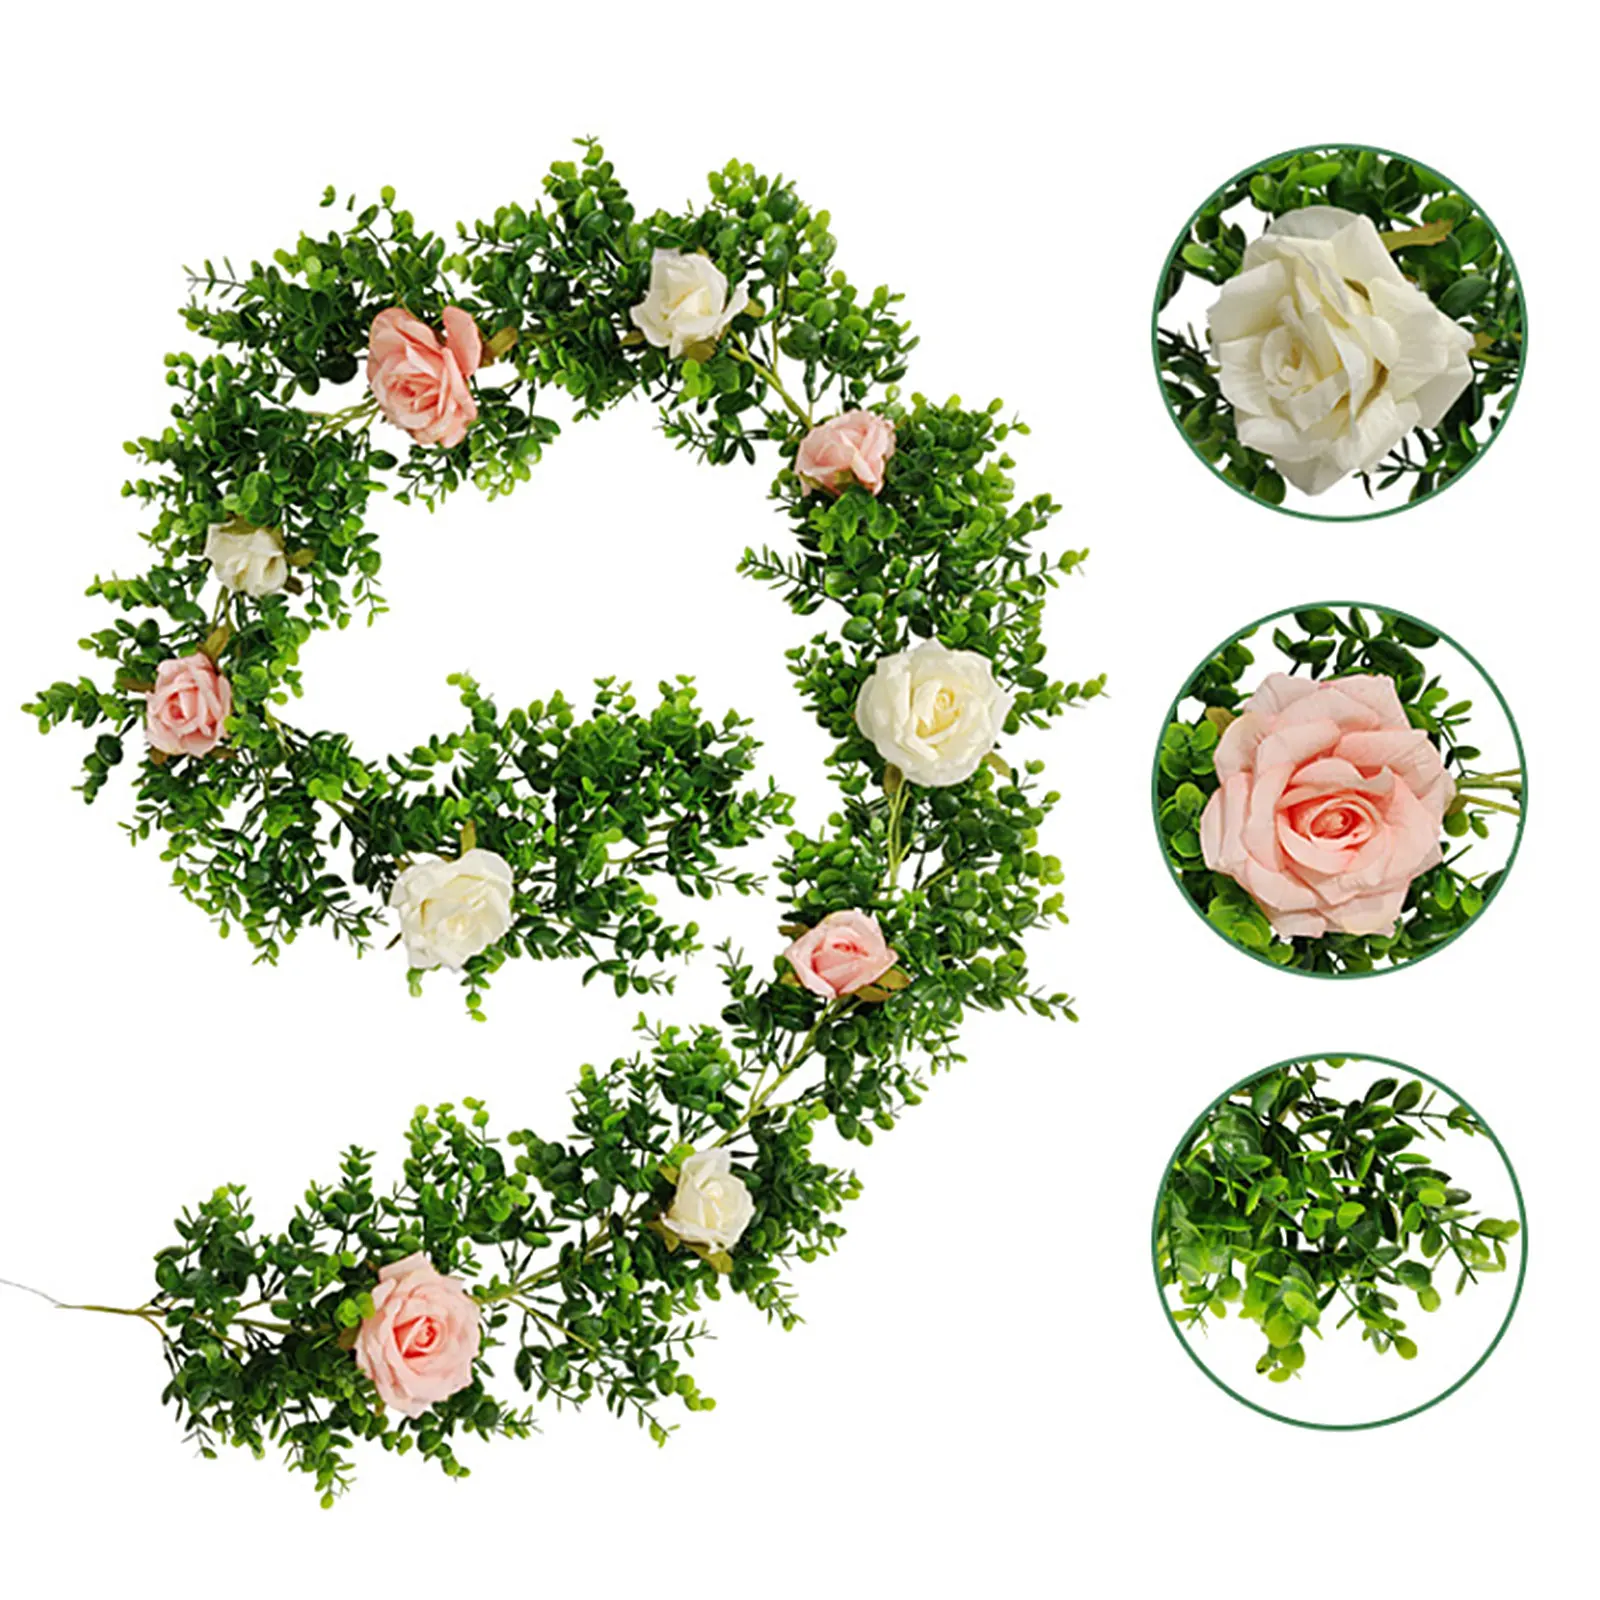 

Искусственный цветок ротанг, искусственные розы лоза висит цветы зеленые листья гирлянда романтический свадебный фон настенный Декор для ...